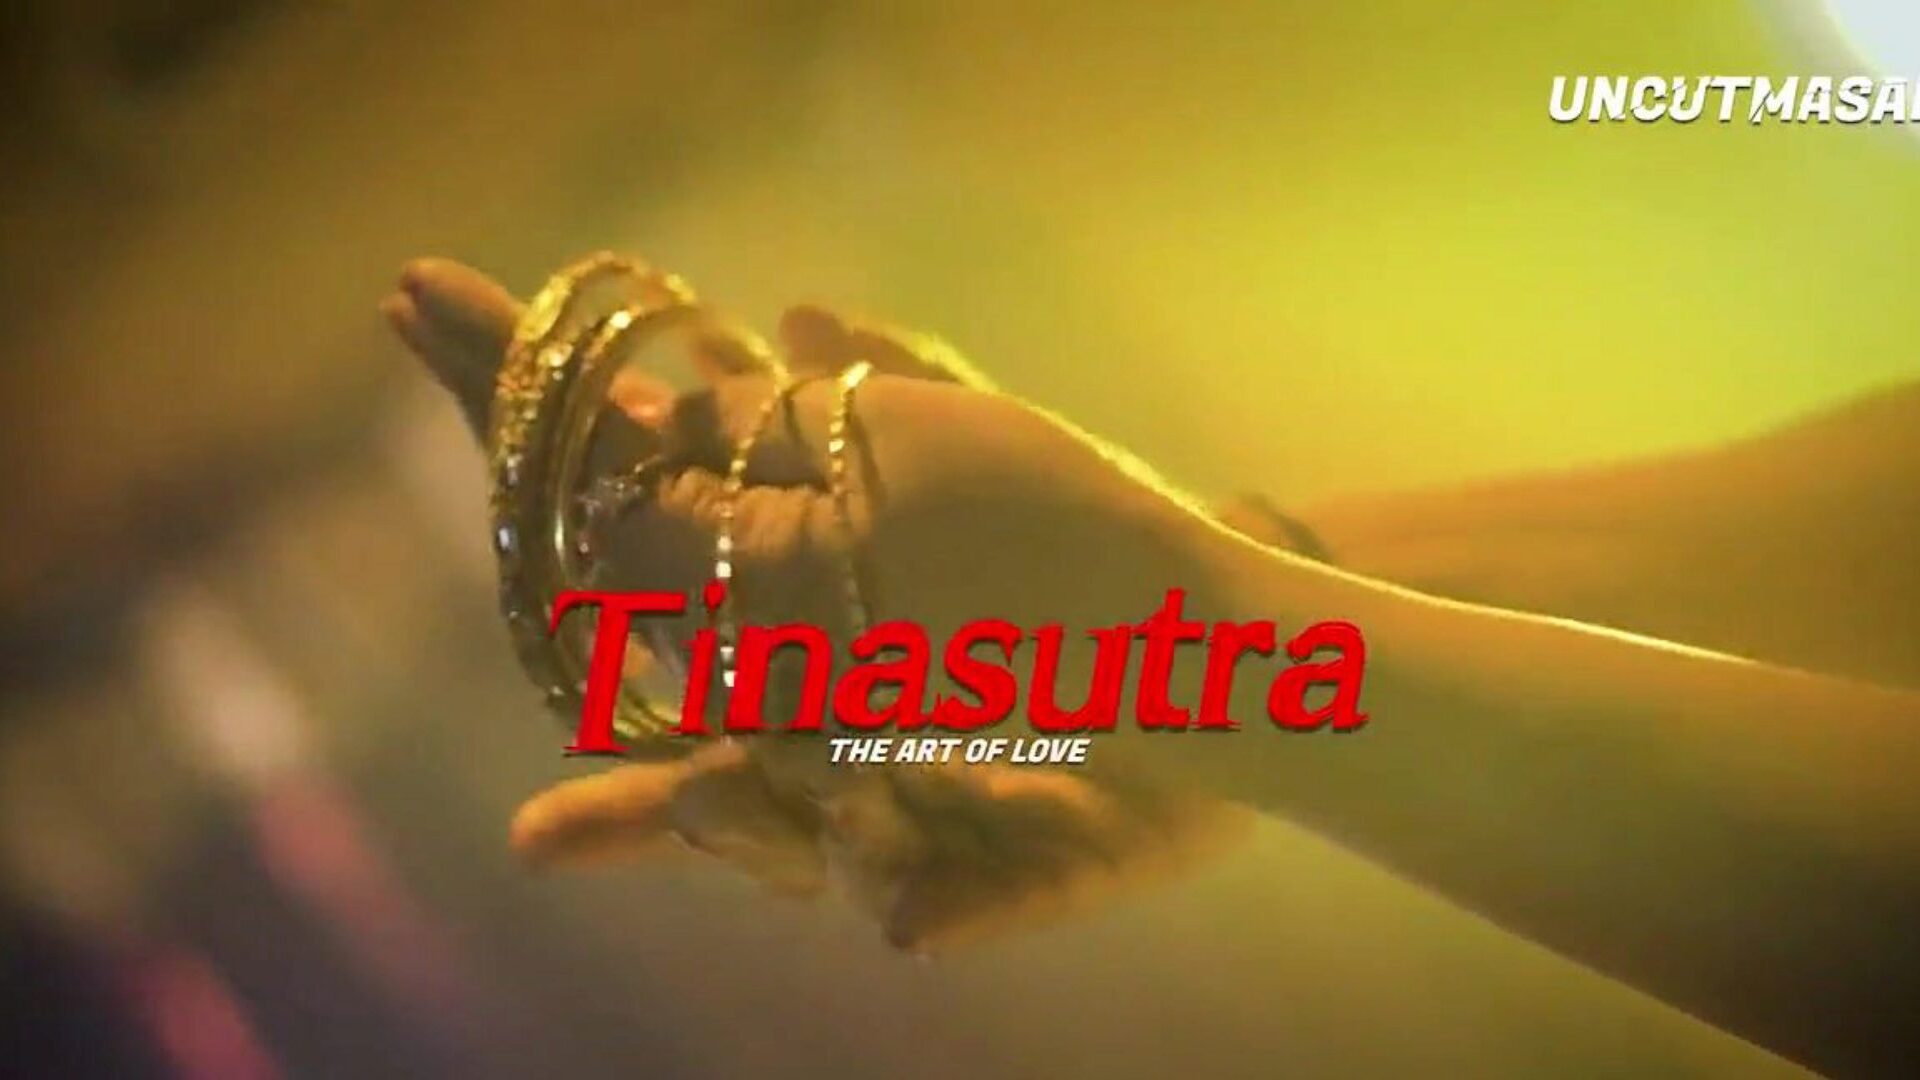 tinasutra бенгальской история секса, бесплатно индийский b9 смотреть HD порно tinasutra бенгальского секса истории клипа на xhamster, самого хороший HD етет-а-Тон сайт трубки с тоннами бесплатно для всех азиатских индийских и свободных бенгальских порнографических видео